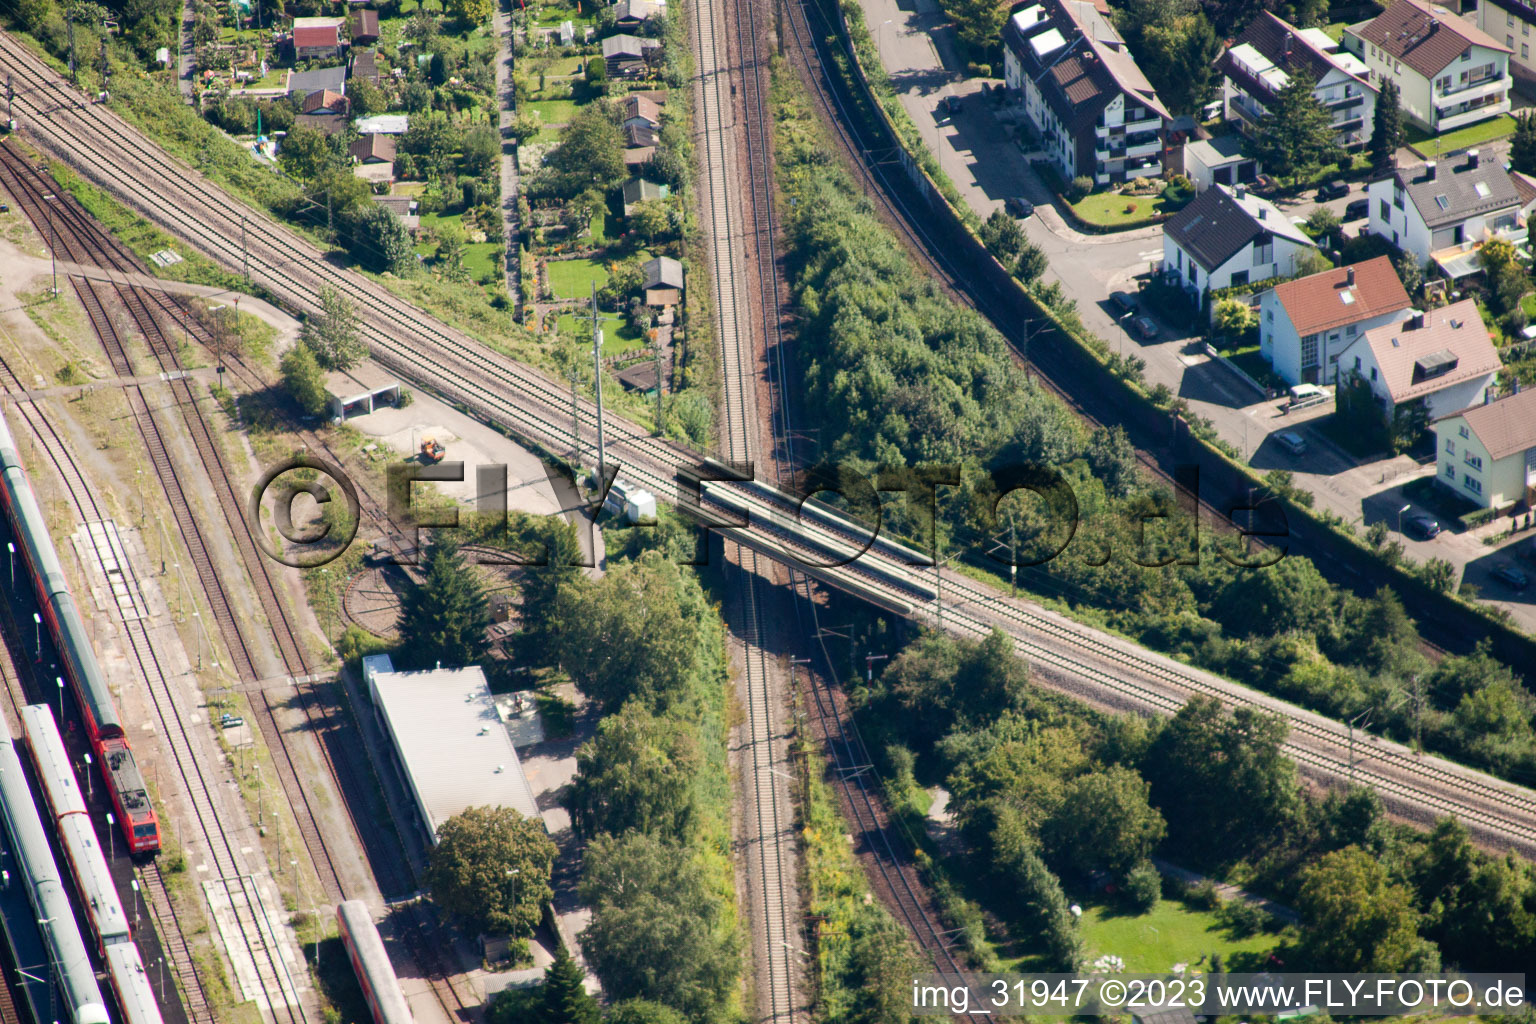 Luftbild von Streckenführung der Bahn- Kreuzung der Schienen- und Gleisanlagen der Deutschen Bahn in Karlsruhe im Ortsteil Weiherfeld-Dammerstock im Bundesland Baden-Württemberg, Deutschland